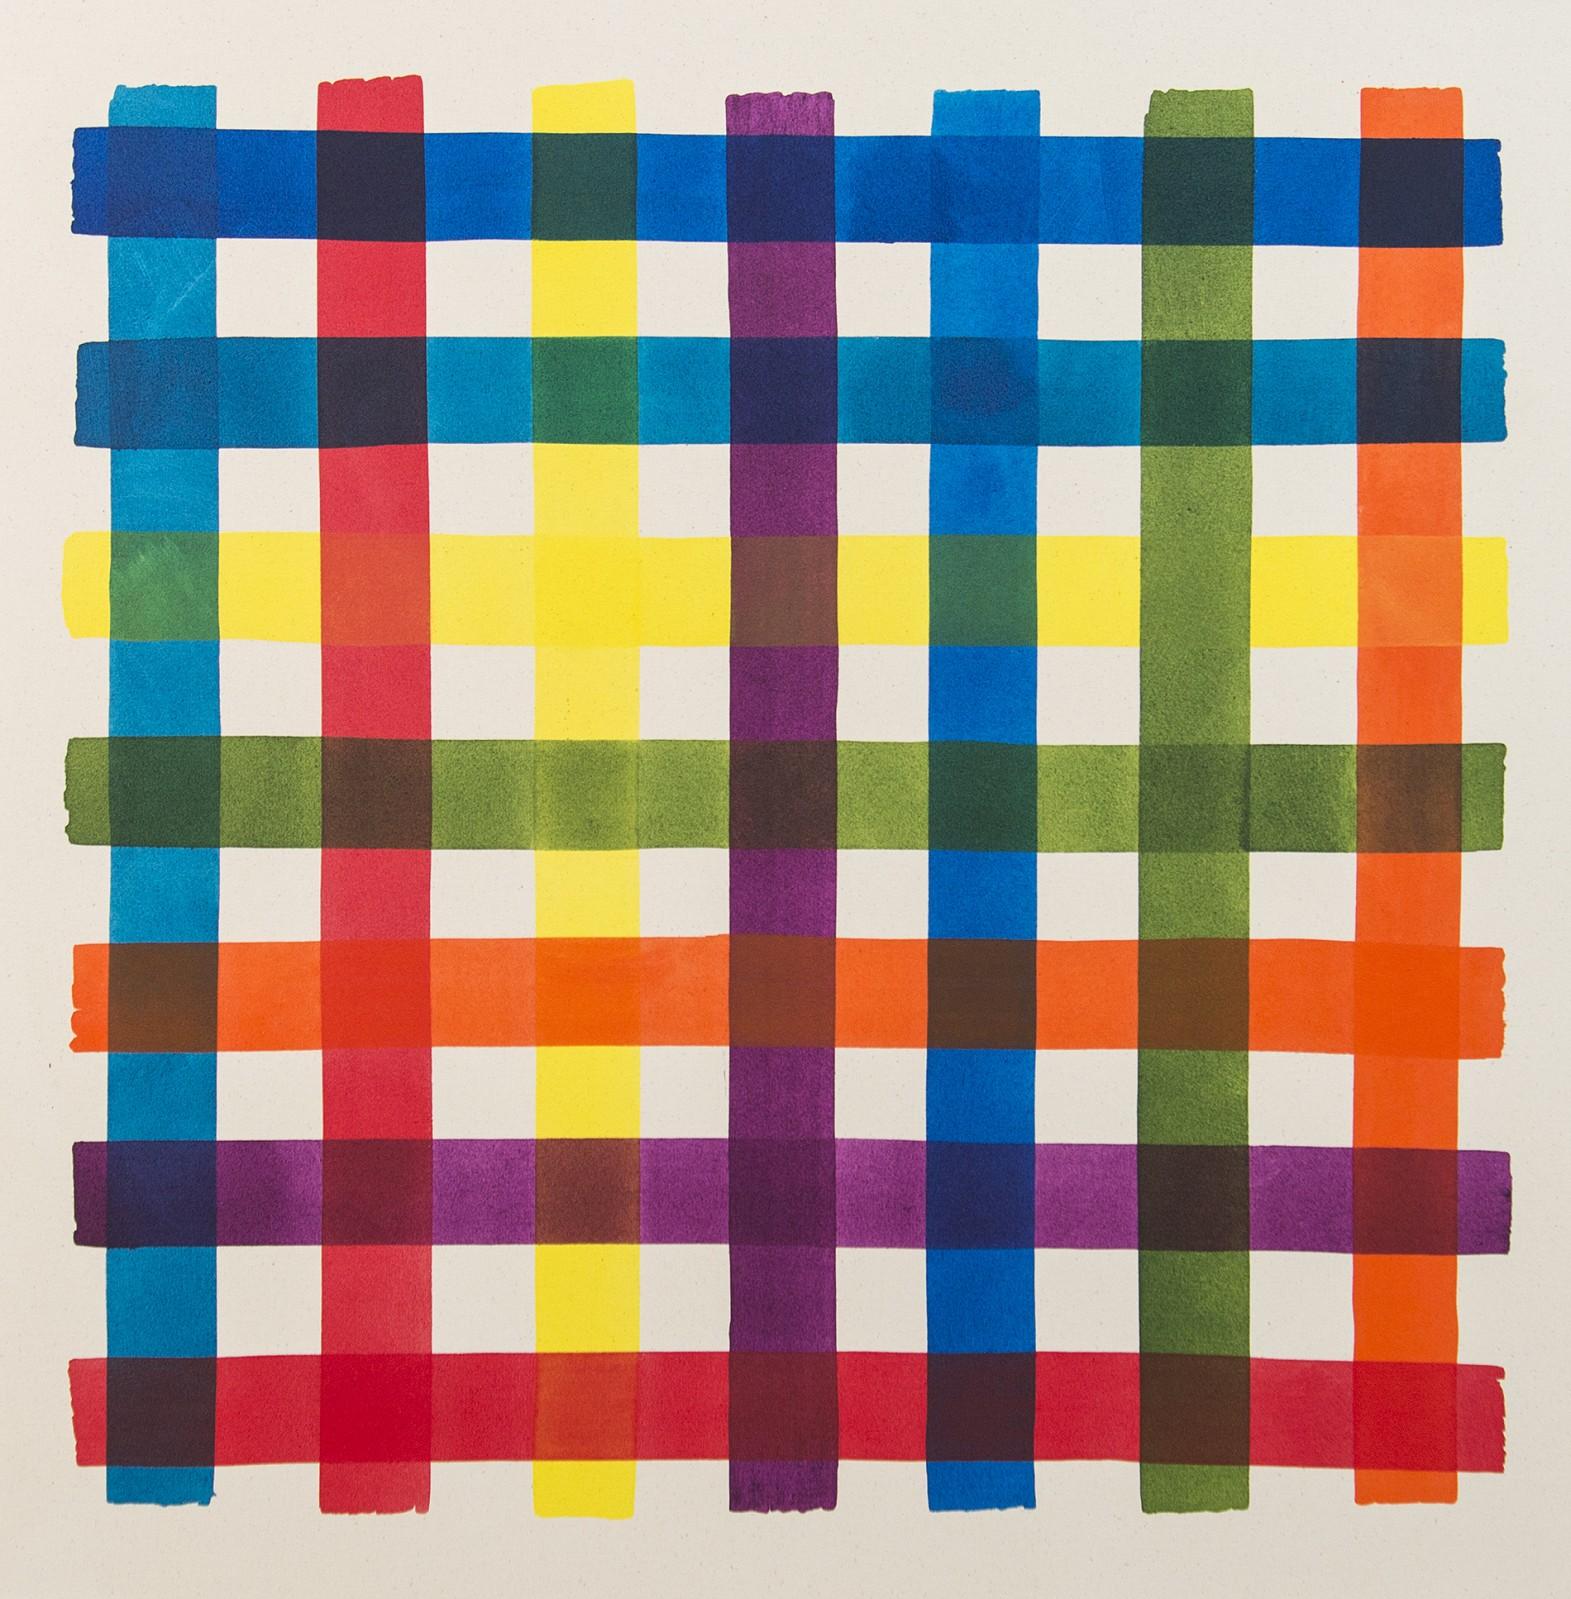 Gris de test multicolore - audacieux, vibrant, saturé, contemporain, acrylique sur toile - Painting de Aron Hill